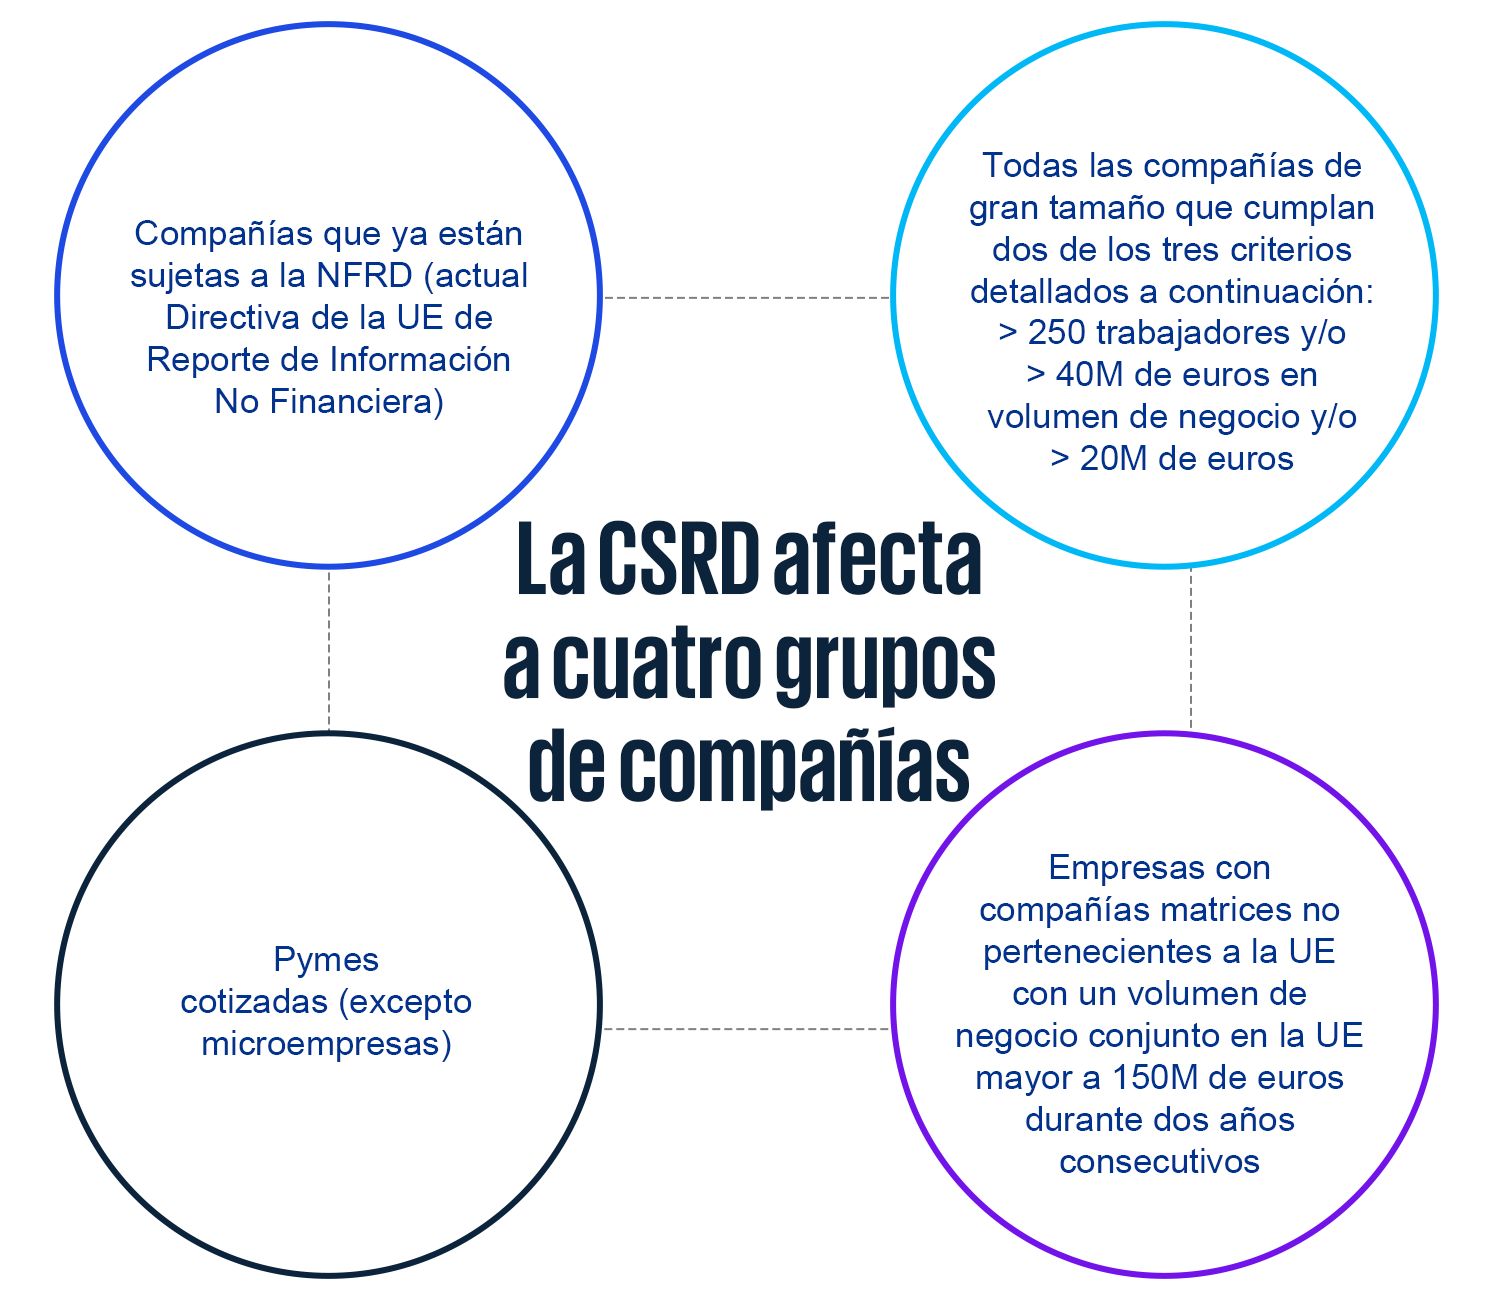 La CSRD afecta a cuatro grupos de compañías: